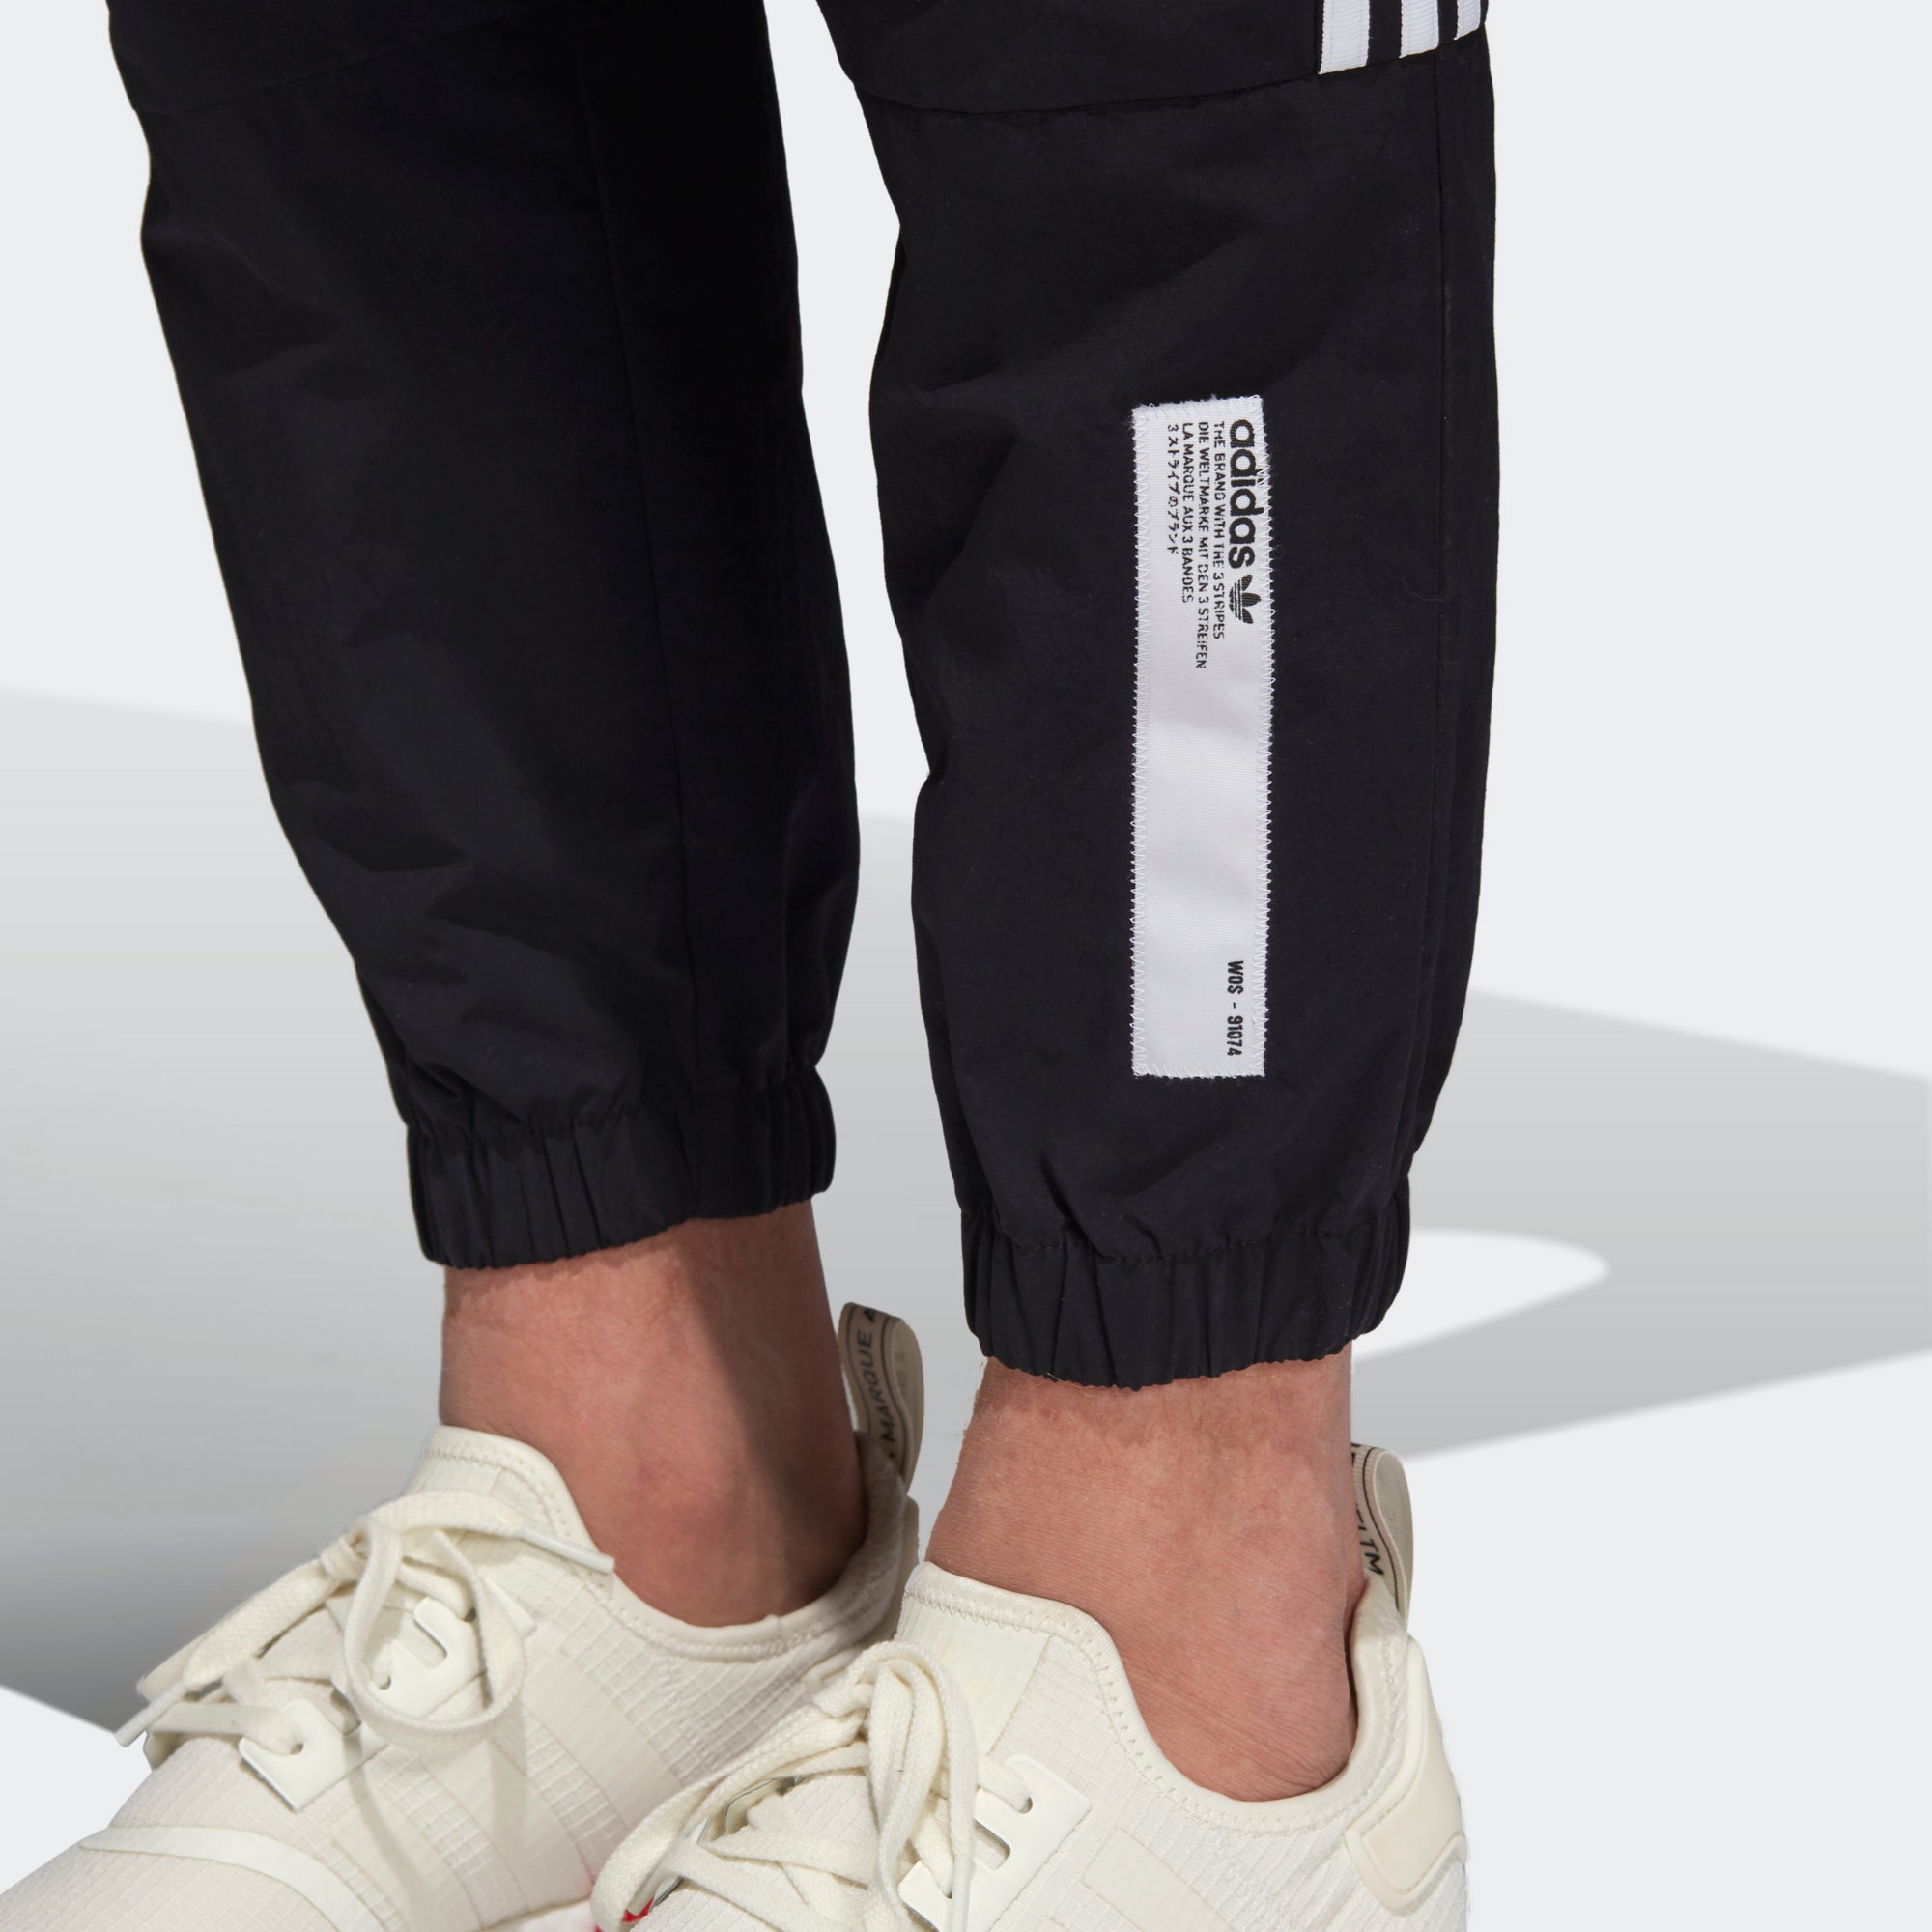 adidas track pants nmd